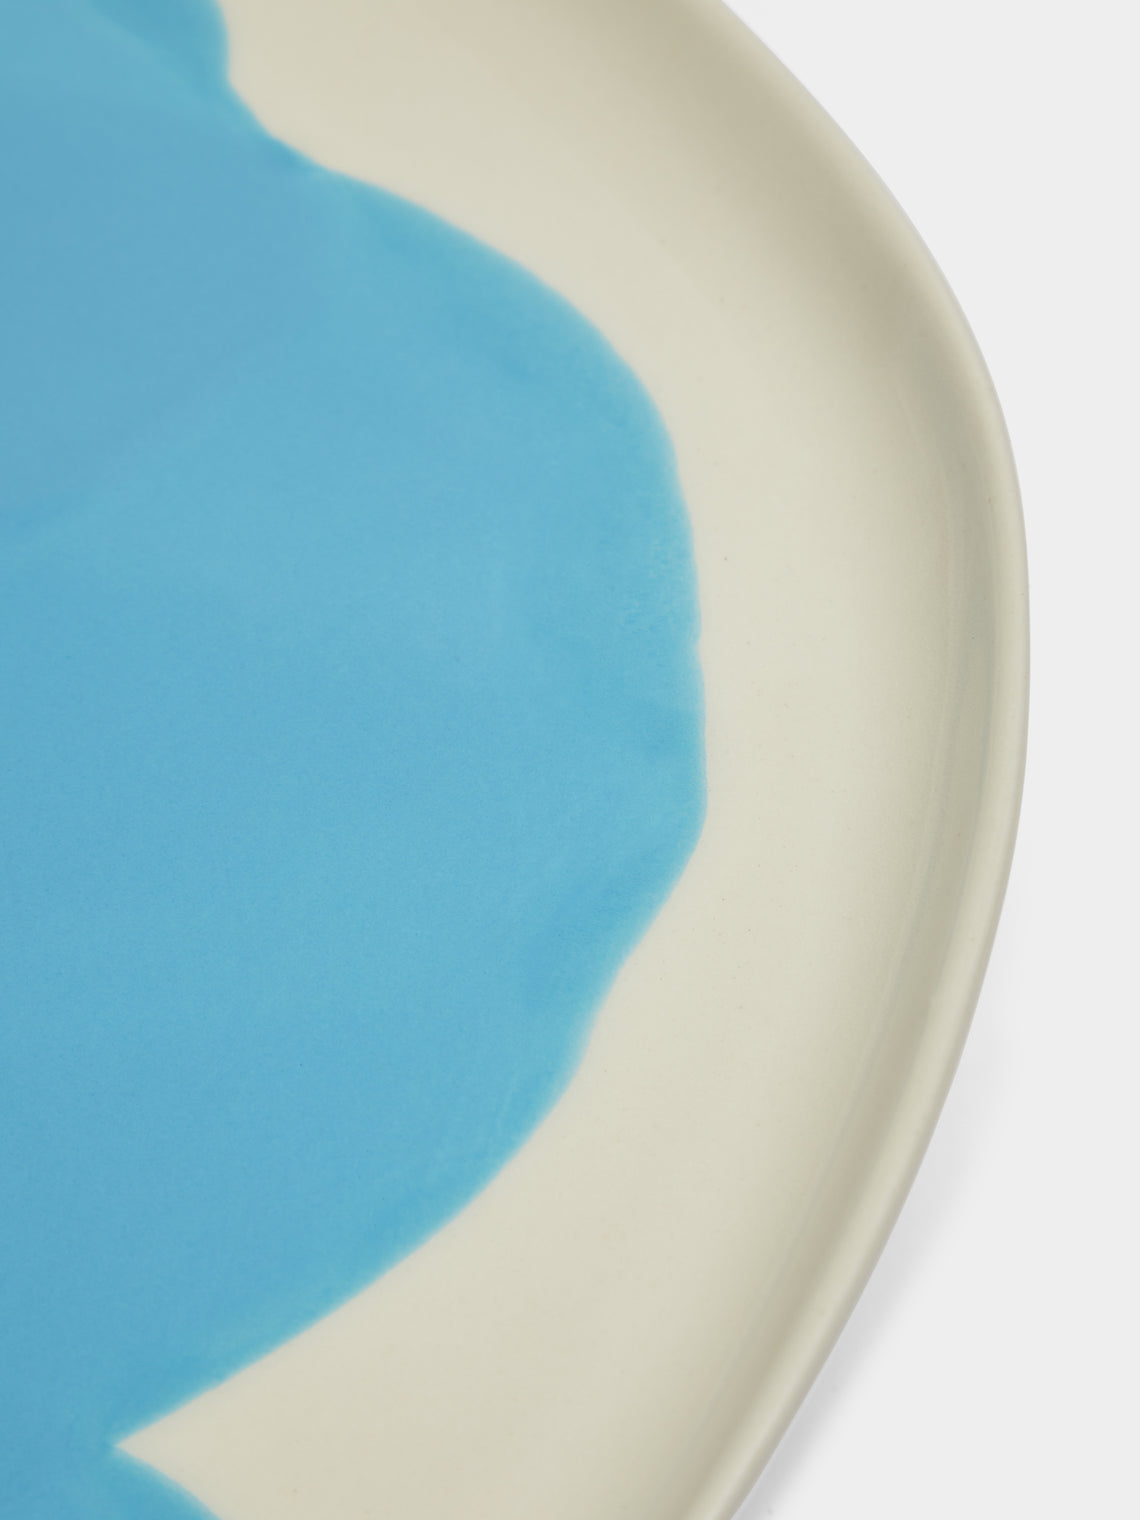 Pottery & Poetry - Hand-Glazed Porcelain Dinner Plates (Set of 4) - Light Blue - ABASK